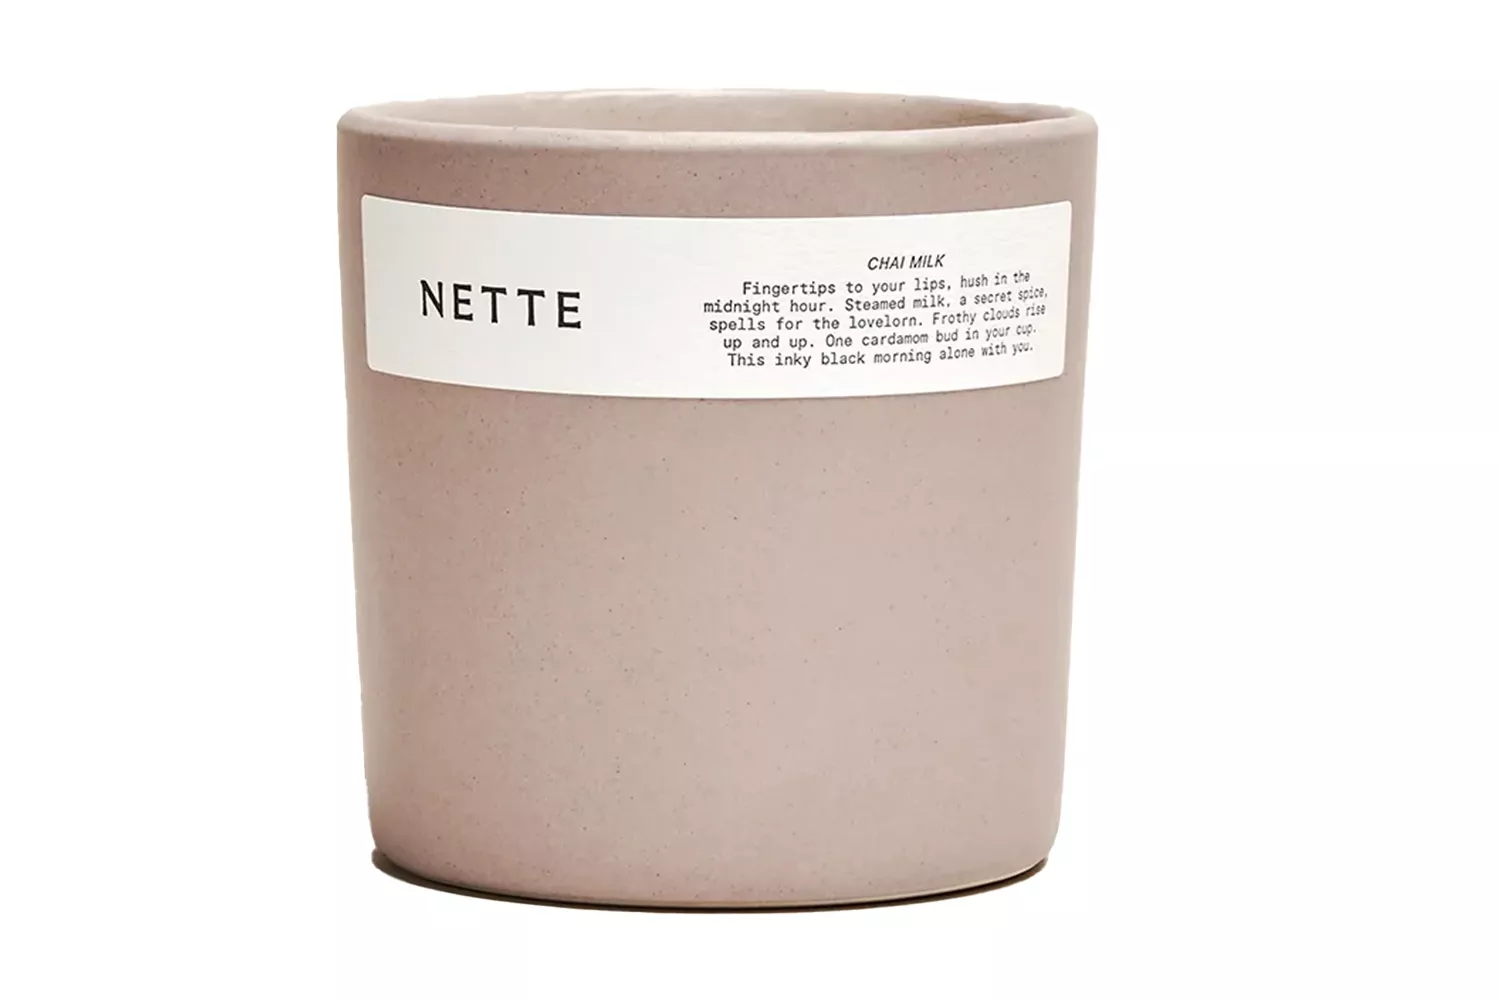 Nette Chai Milk Candle